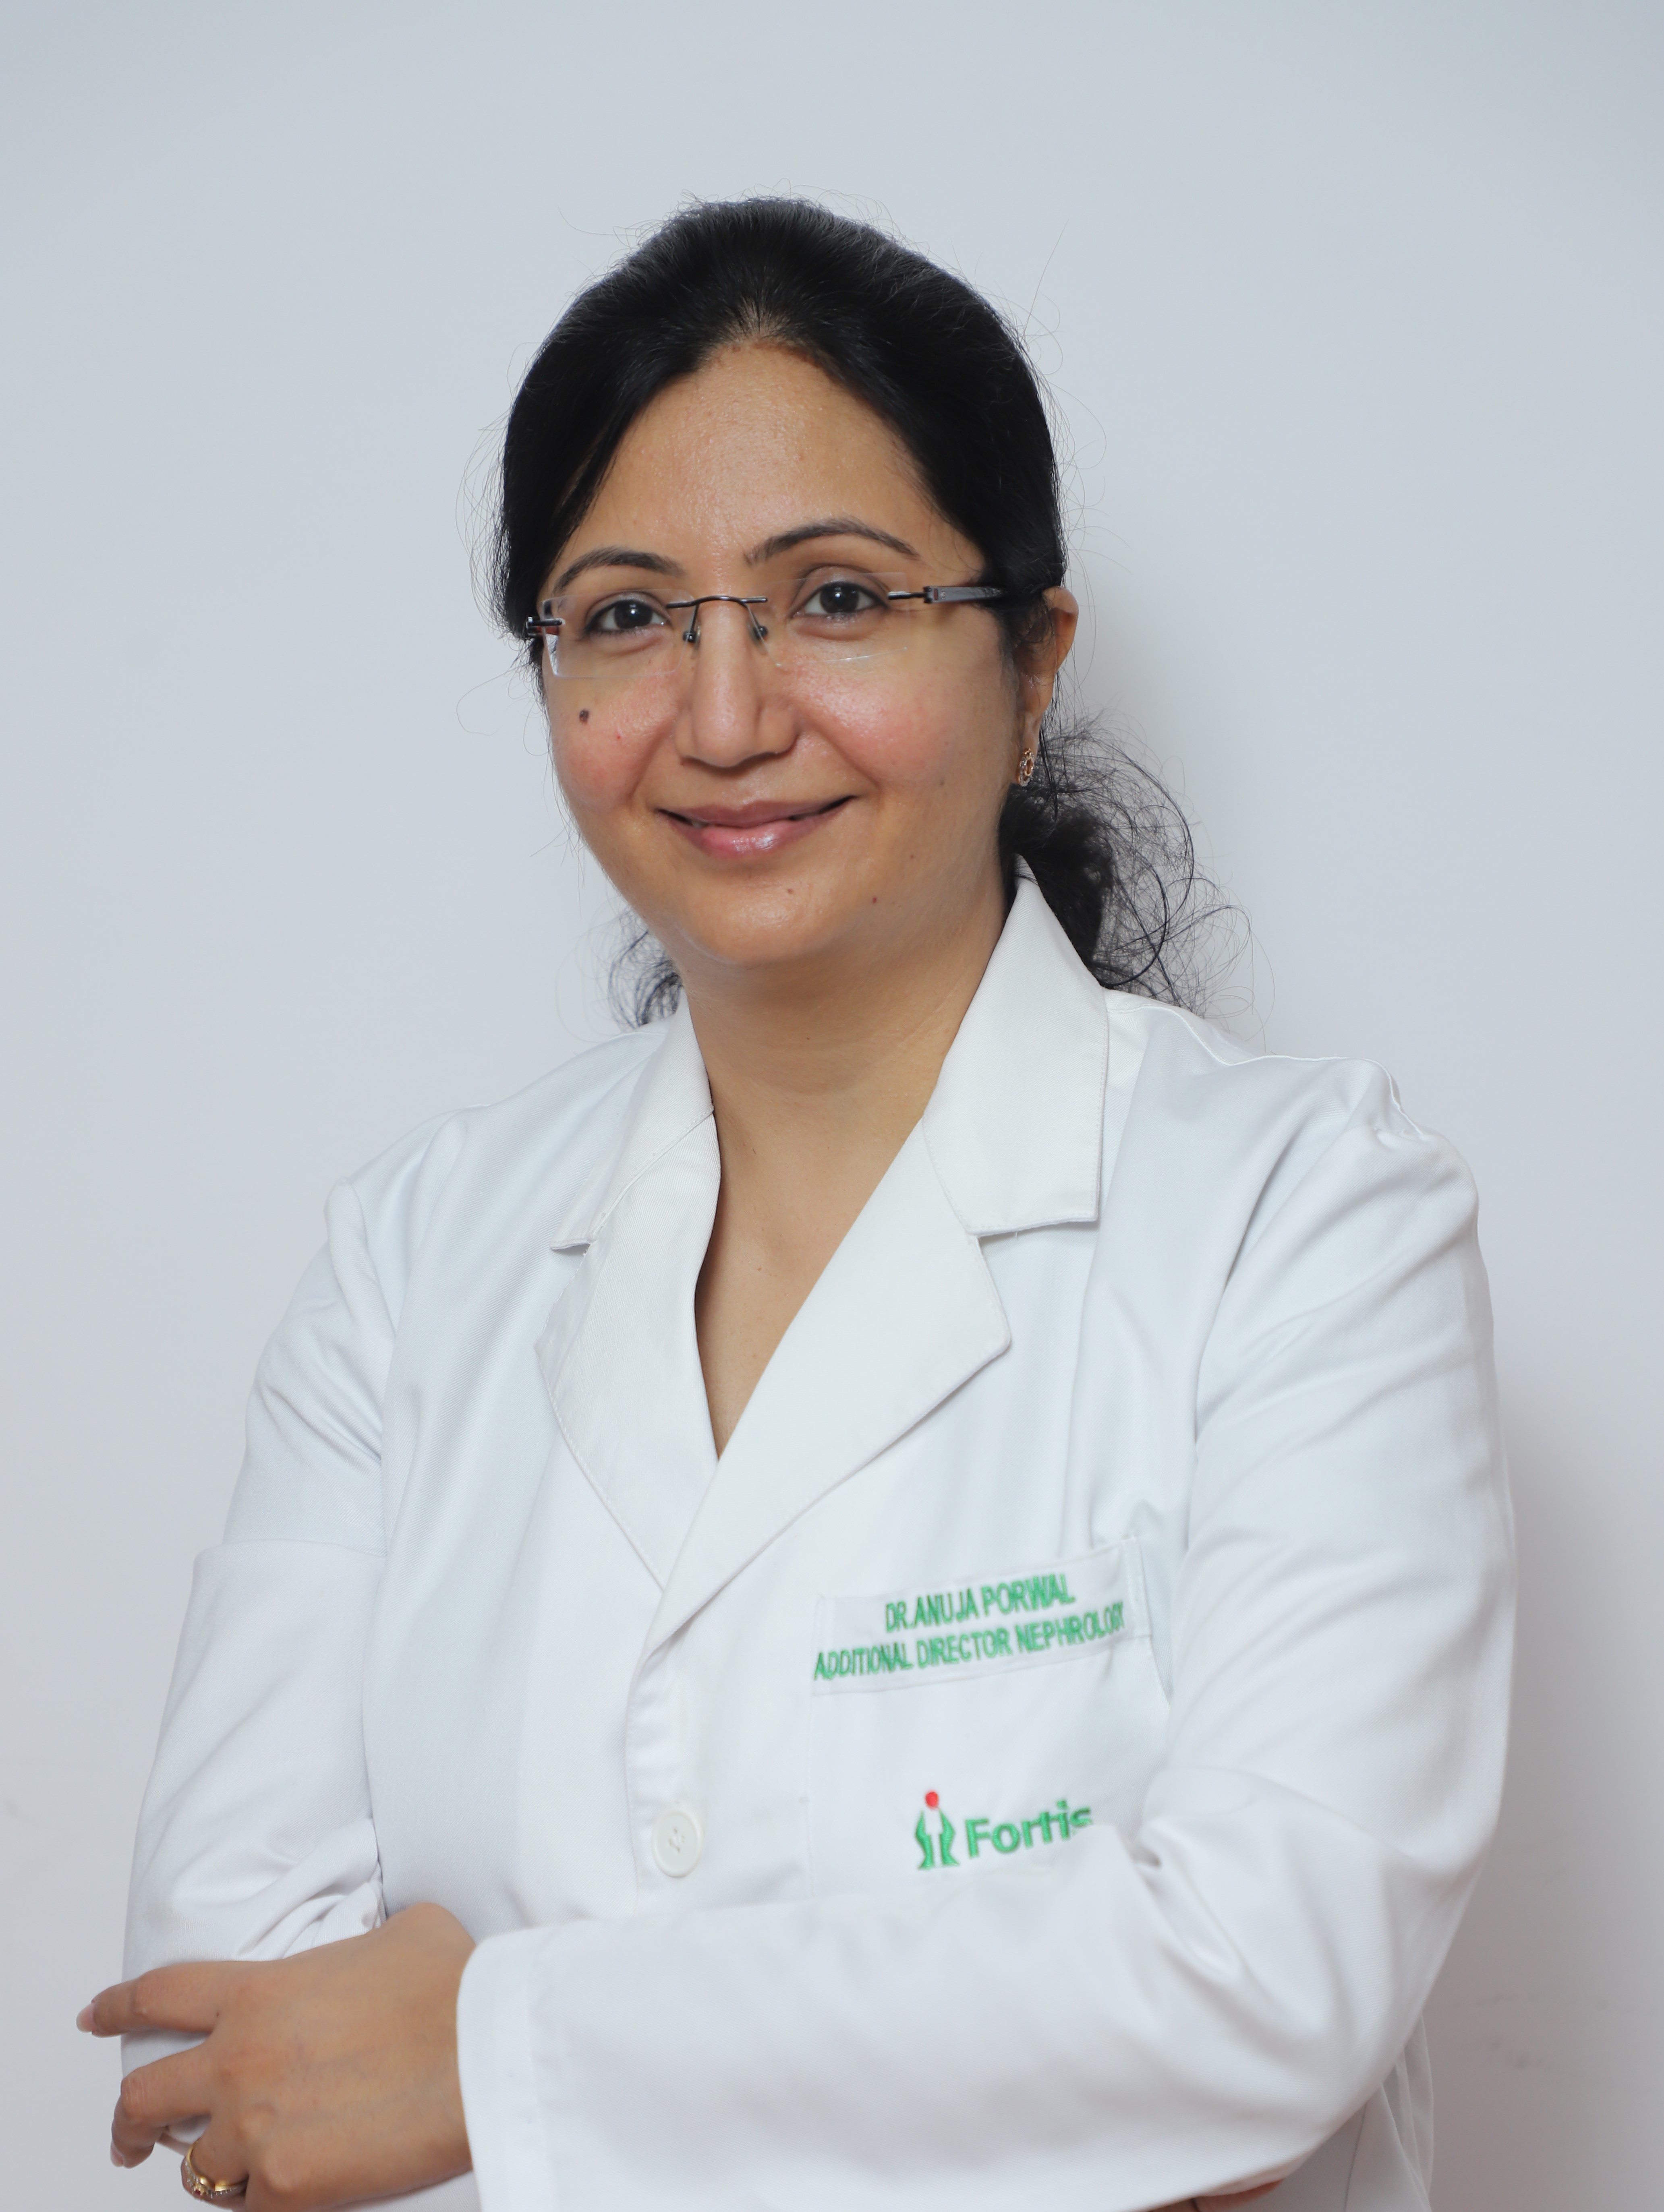 Dr. Anuja Porwal Nephrology Fortis Hospital, Noida